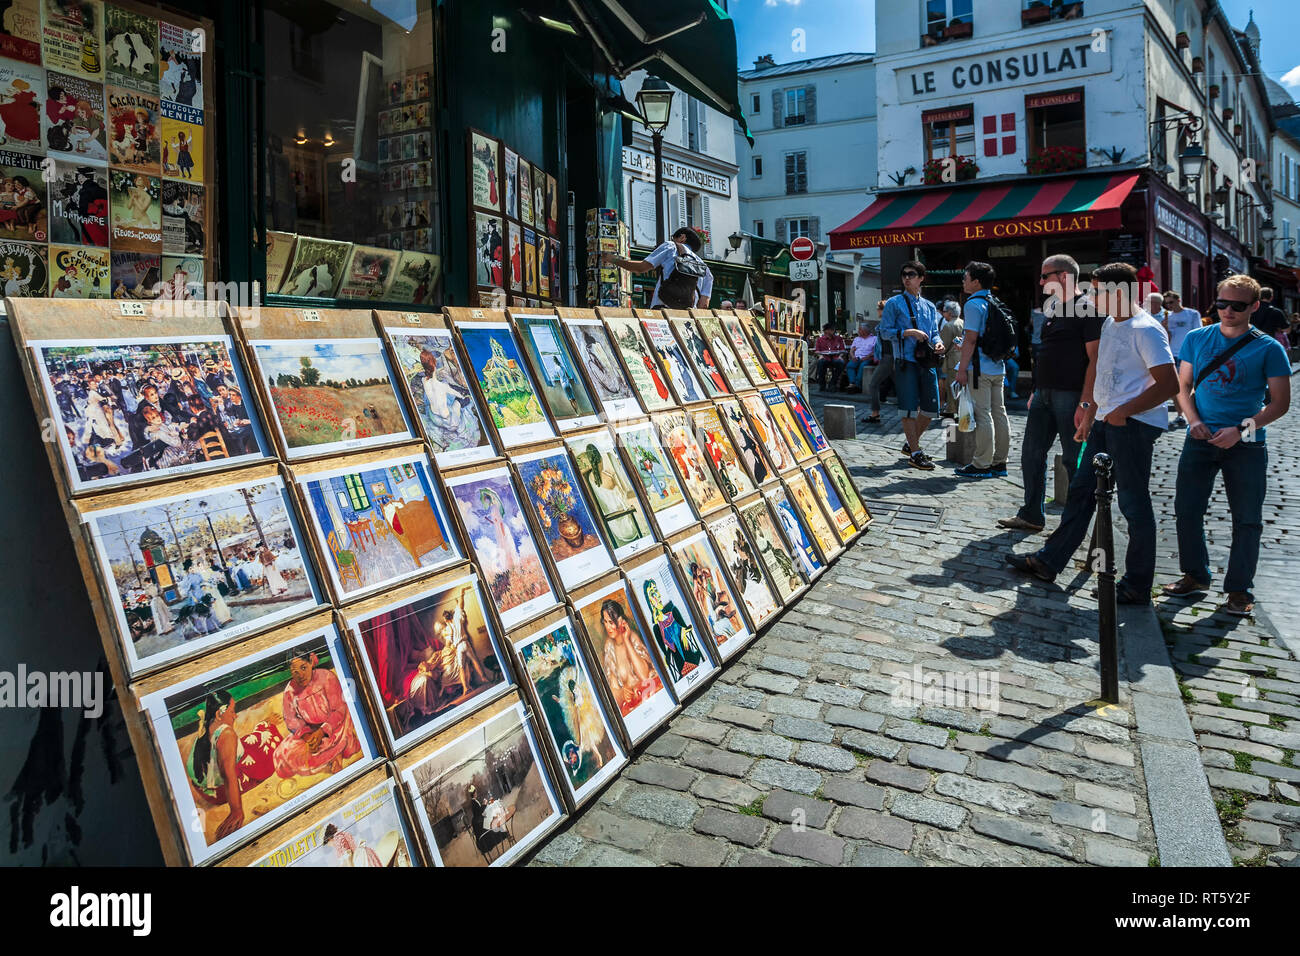 The Art Of Shopping In France Like An Artiste